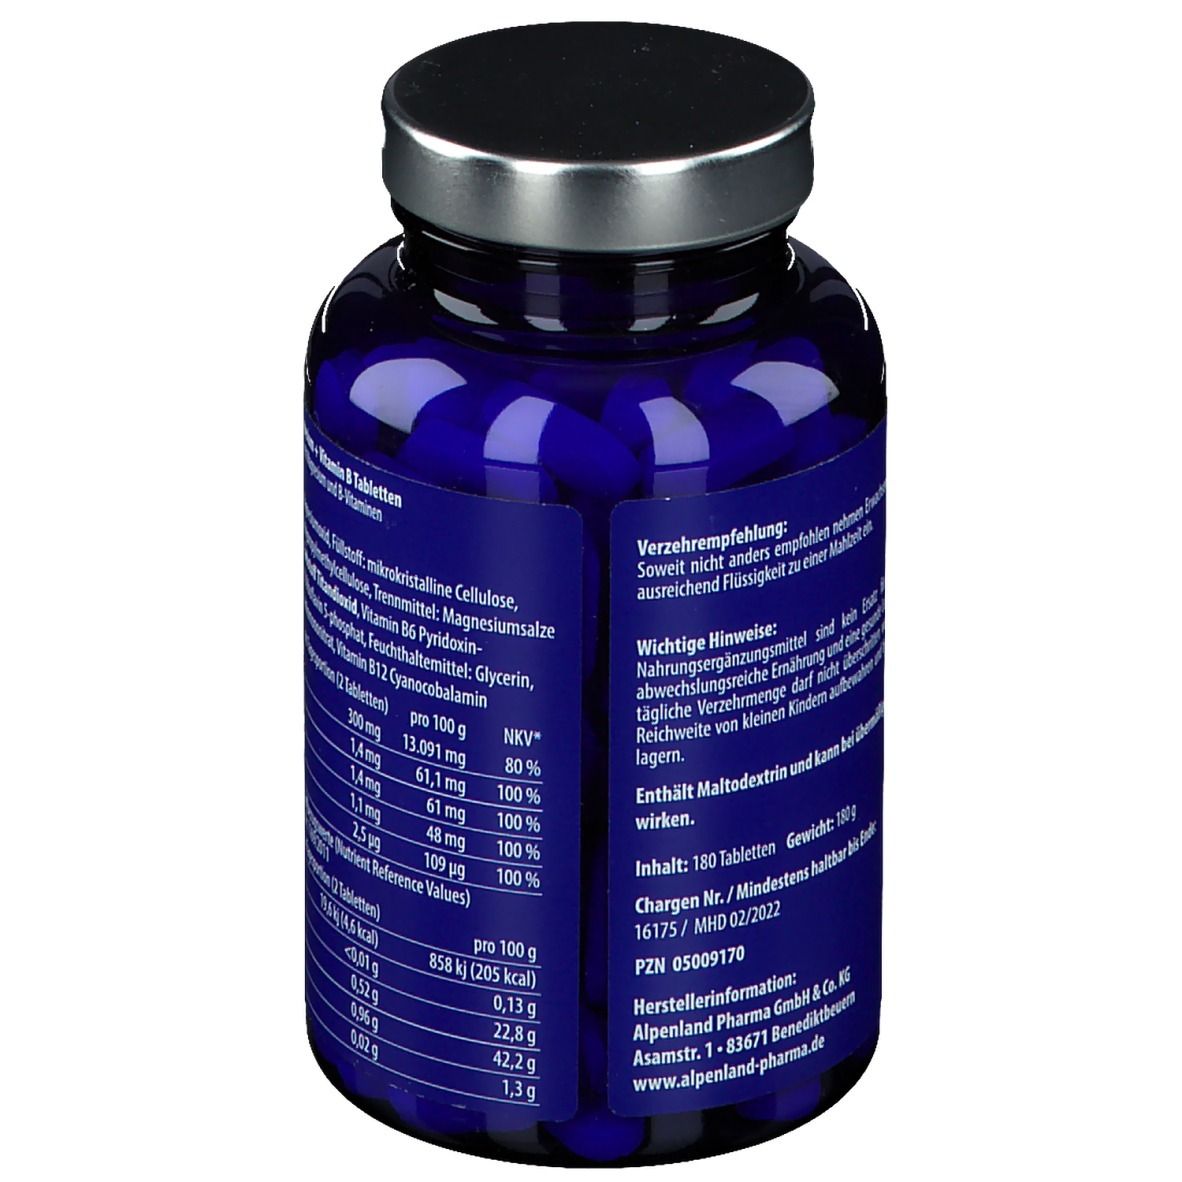 blue essentials® Magnesium Tabletten